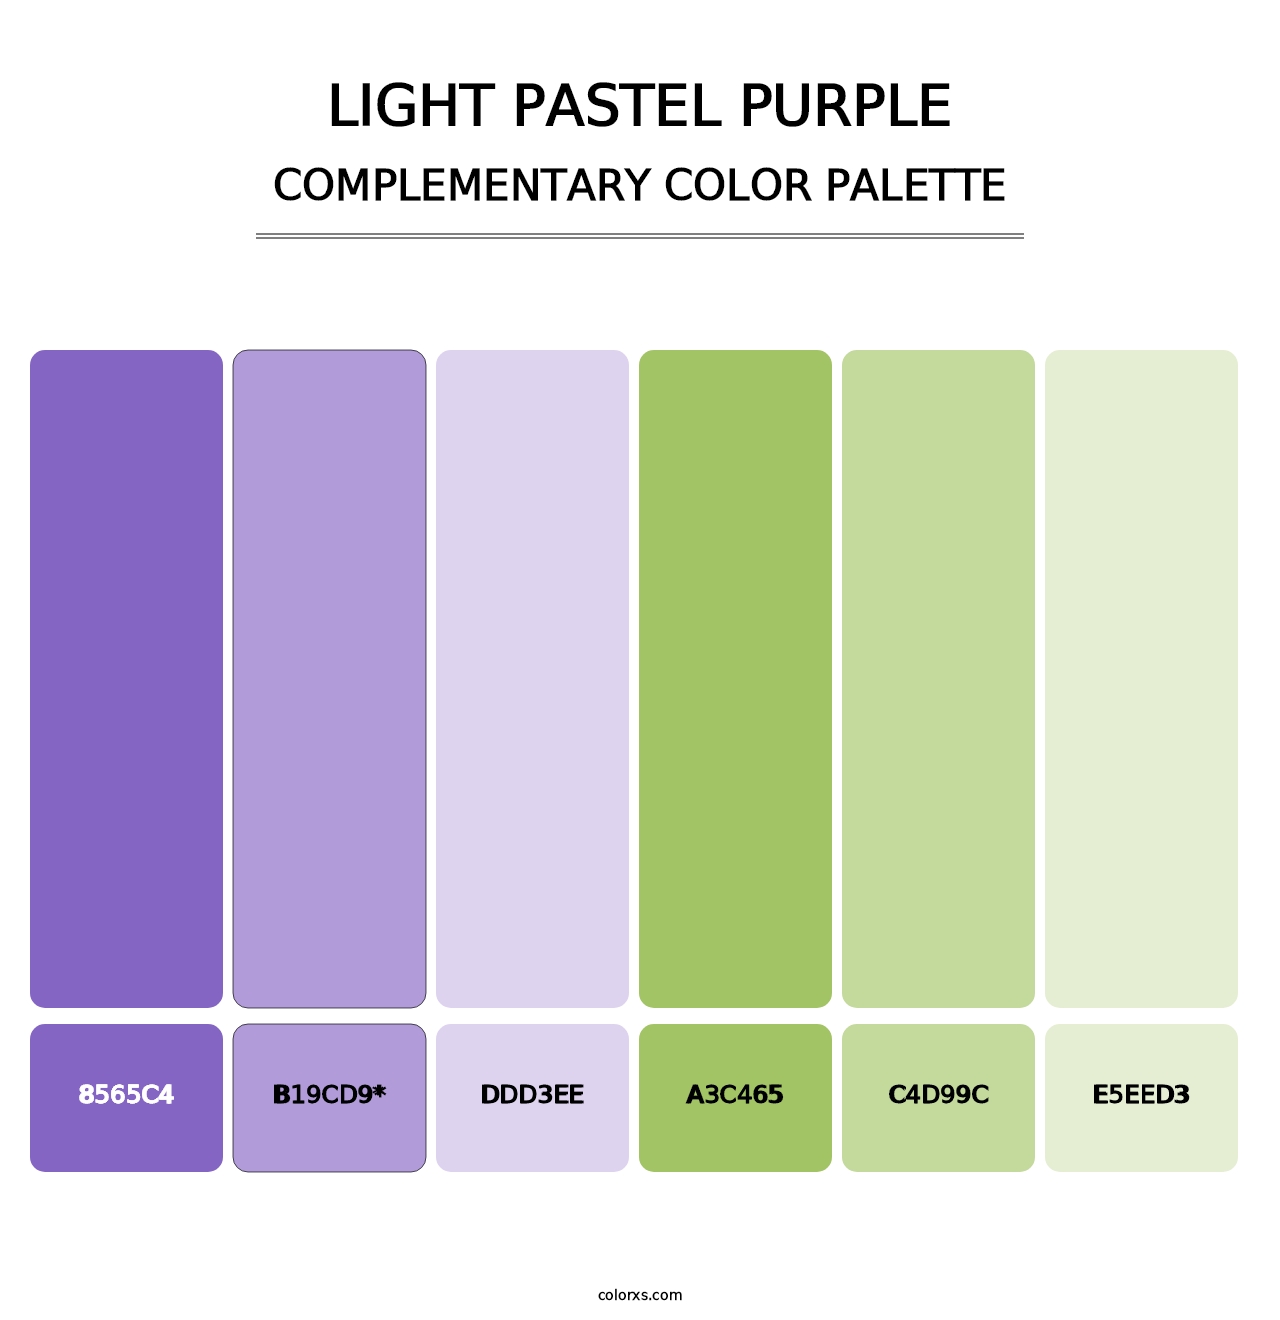 Light Pastel Purple - Complementary Color Palette